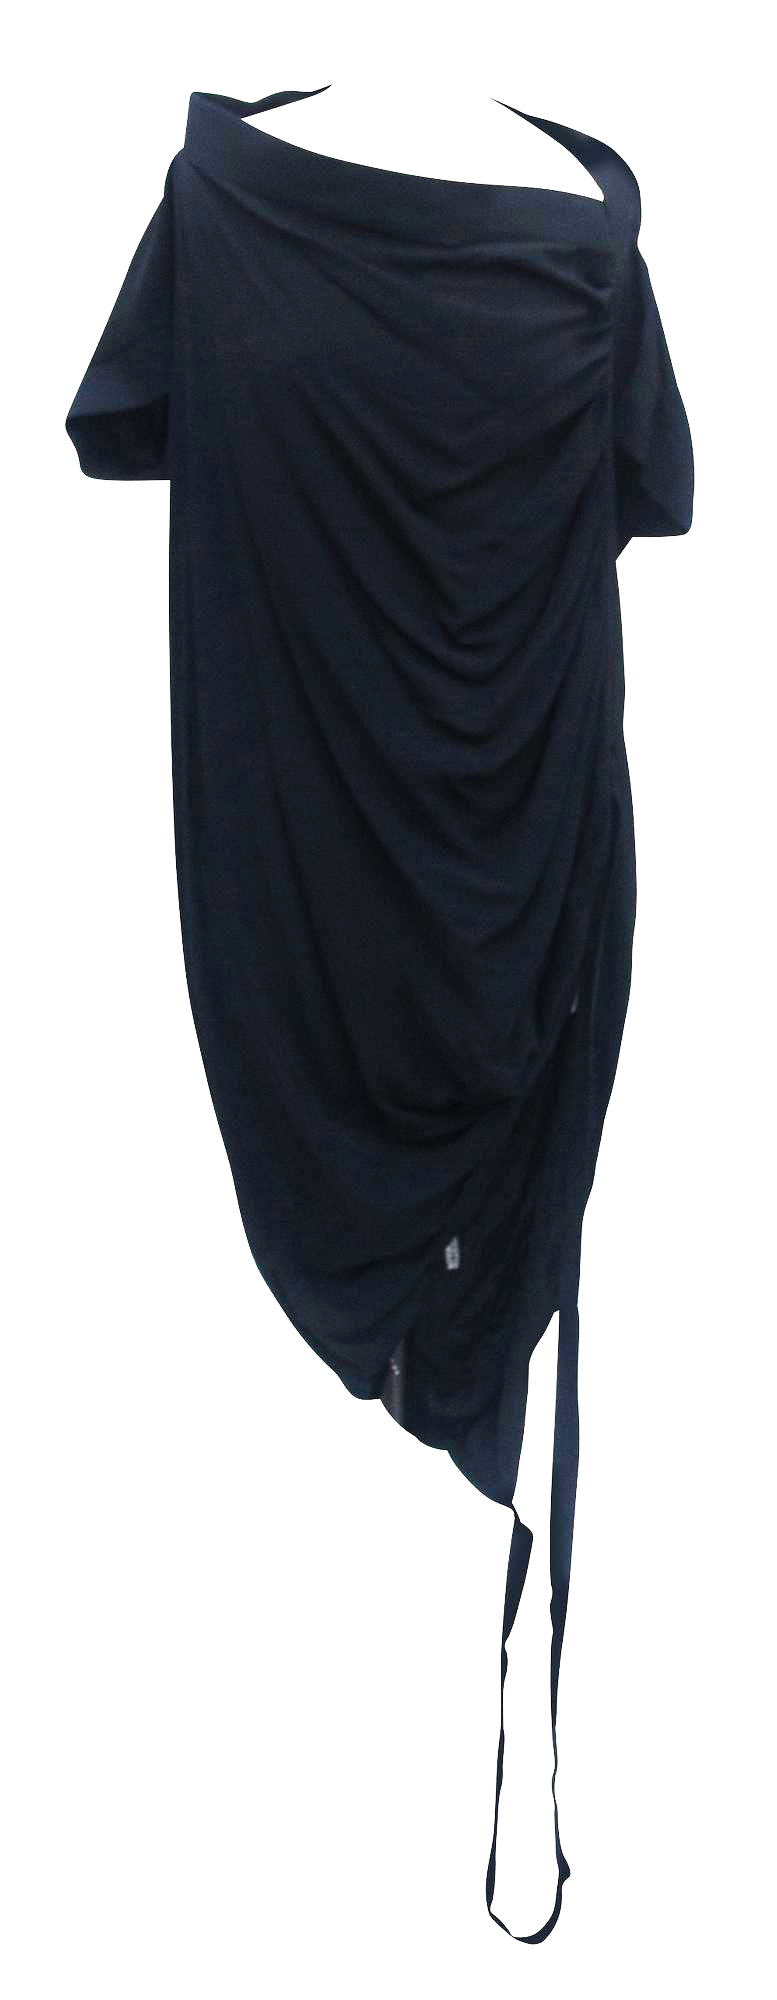 Vivienne Westwood DRAPED DRESS Description: Asymmetrical black cady draped...